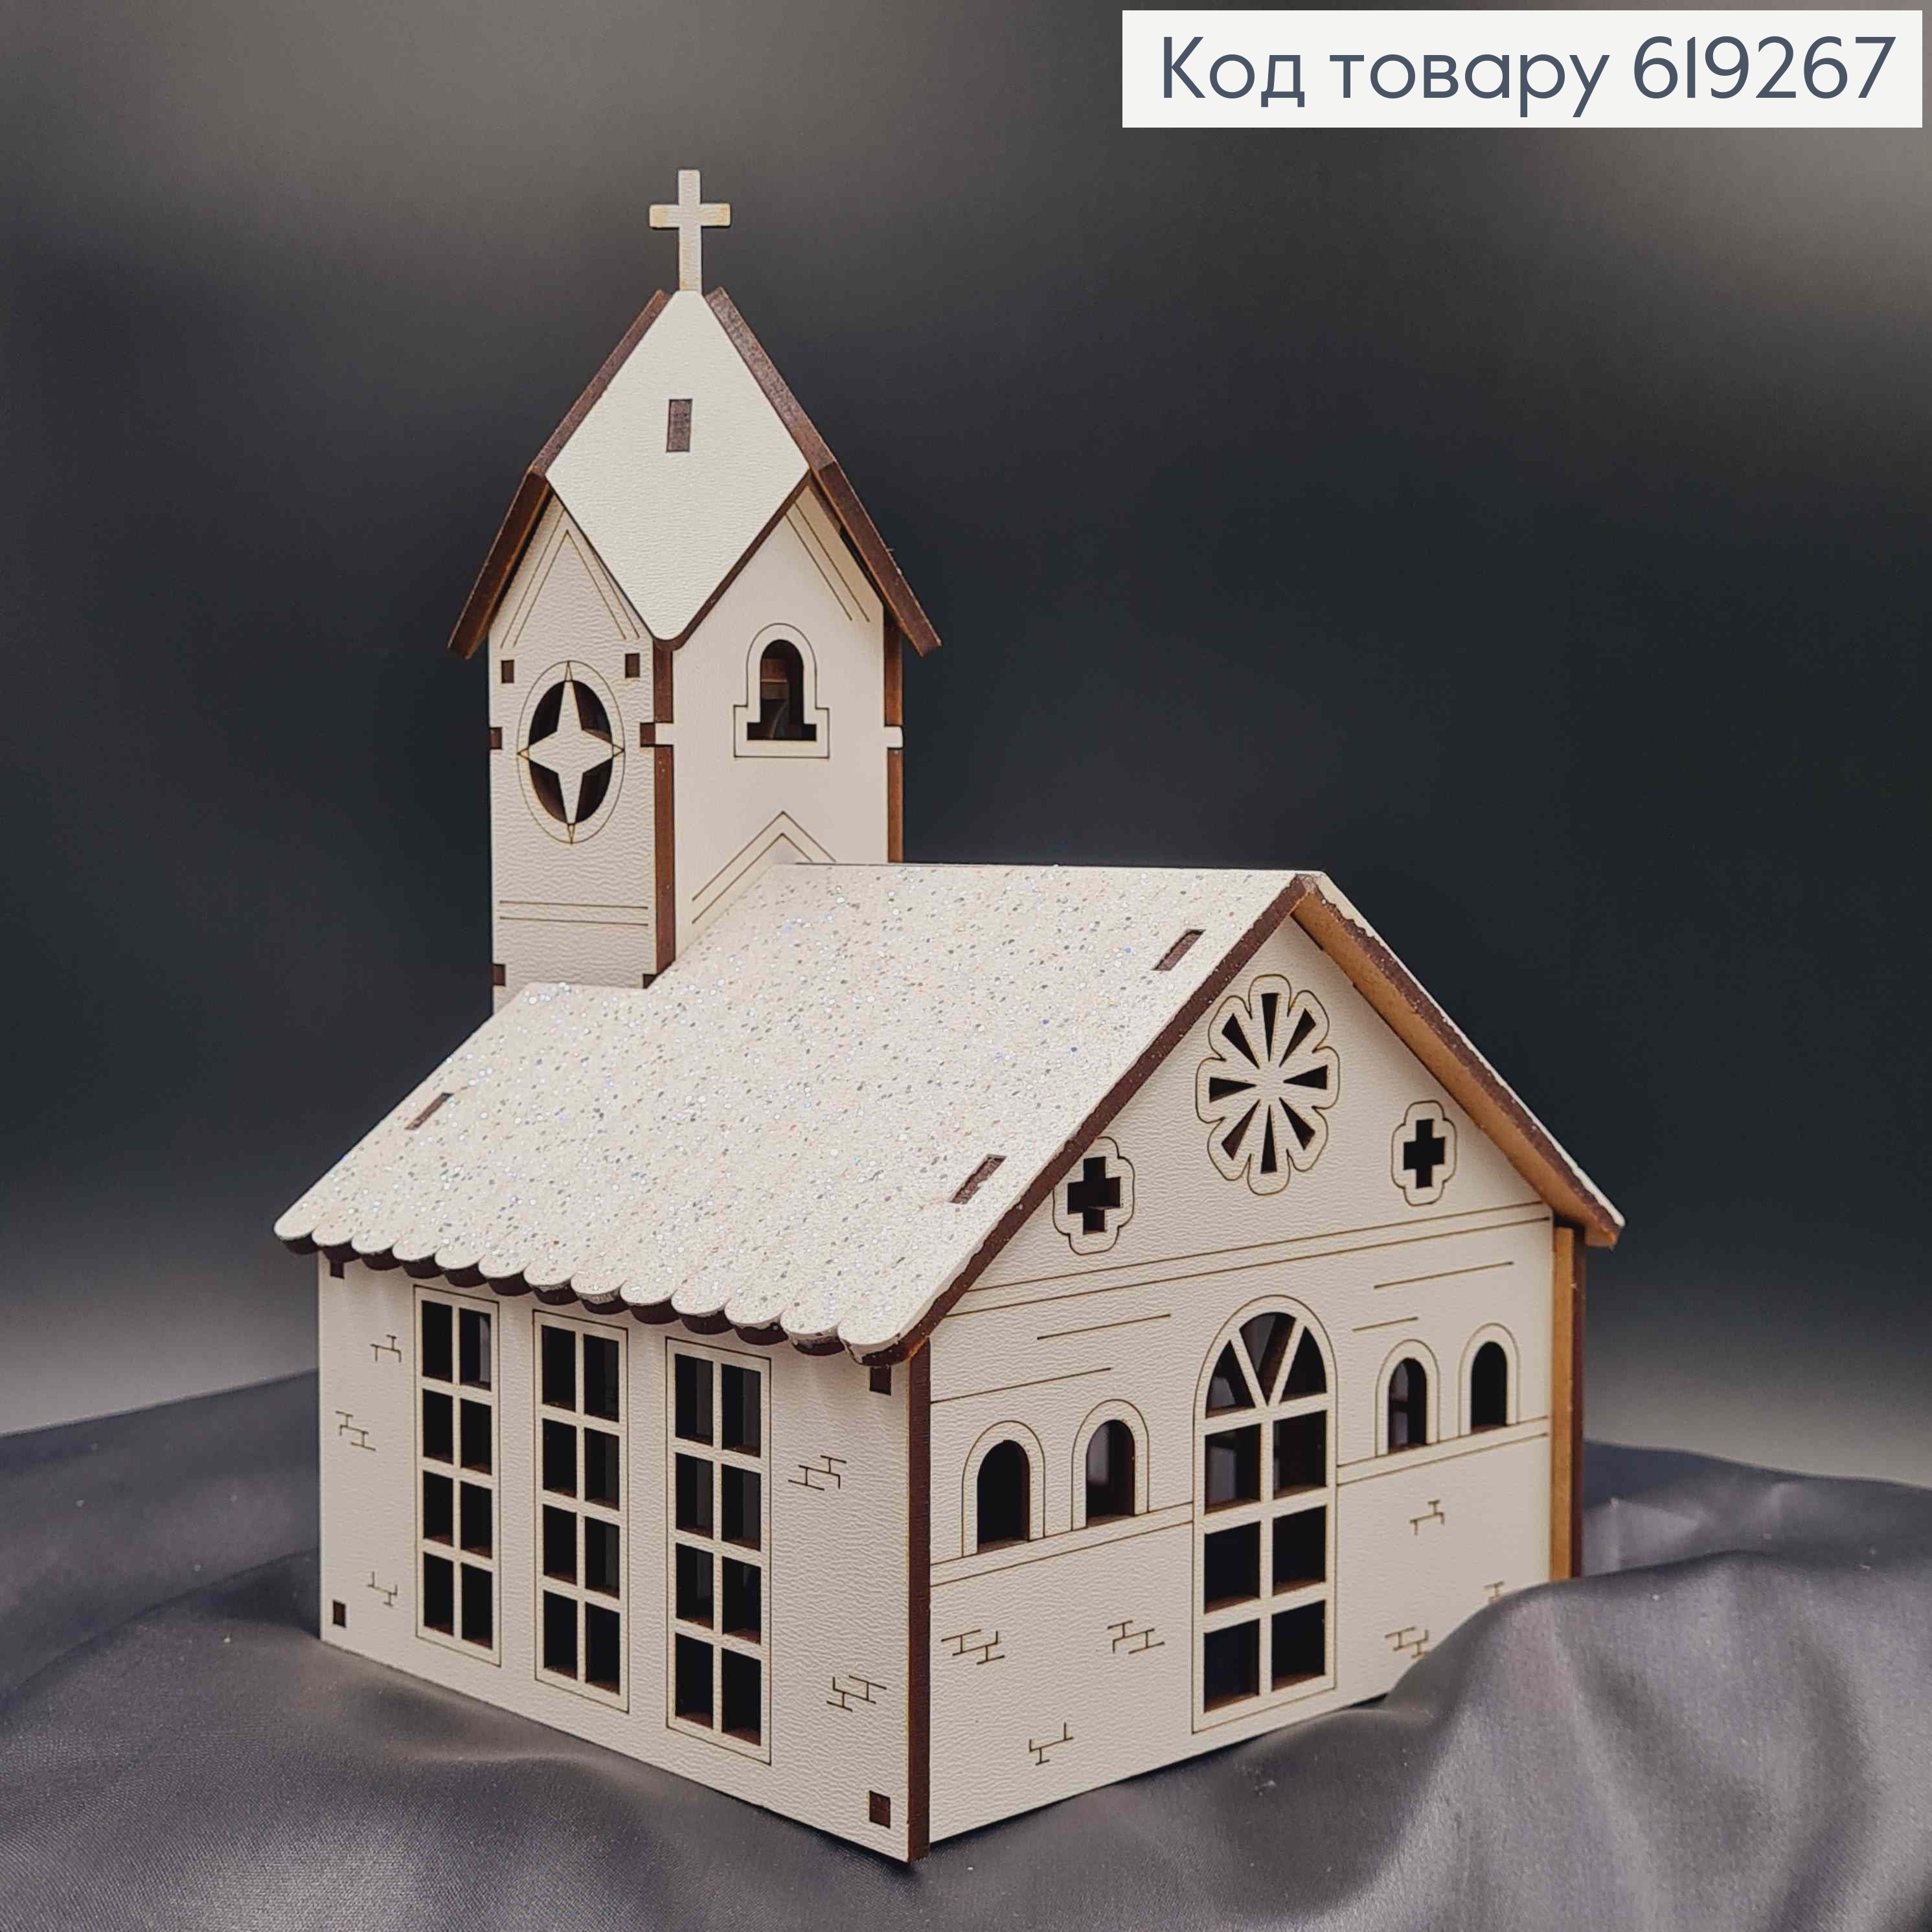 Подсвечник, деревянная белая Церковь, с крестиками, 19,5*13*13,5см, Украина 619267 фото 2